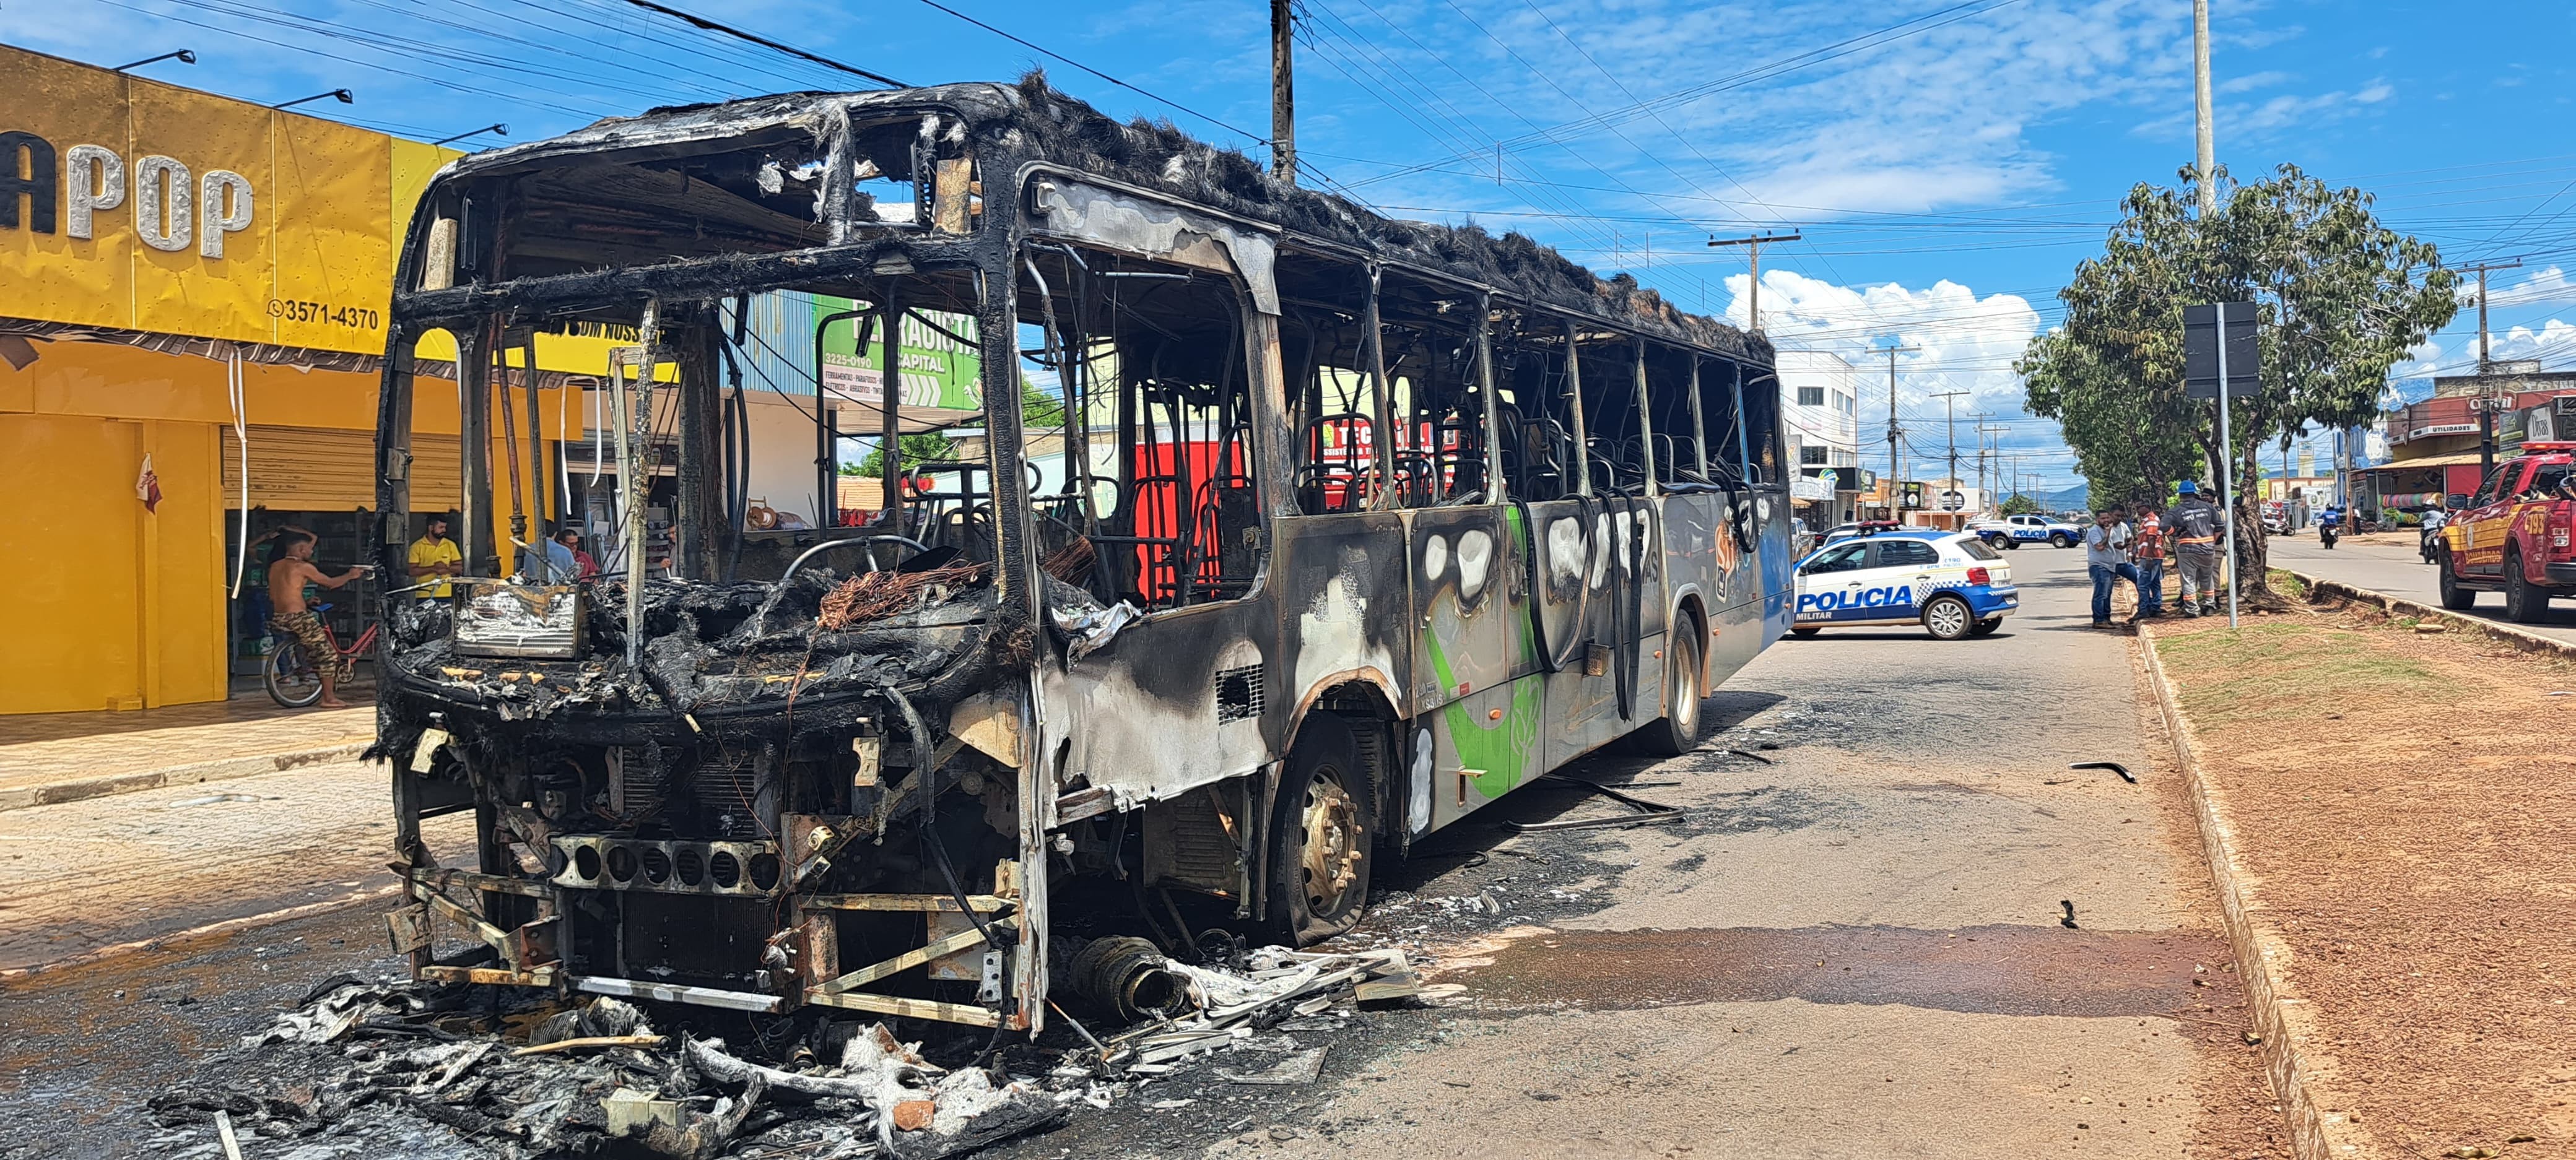 Prefeitura diz que vai ressarcir comerciantes que tiveram prejuízos com incêndio de ônibus